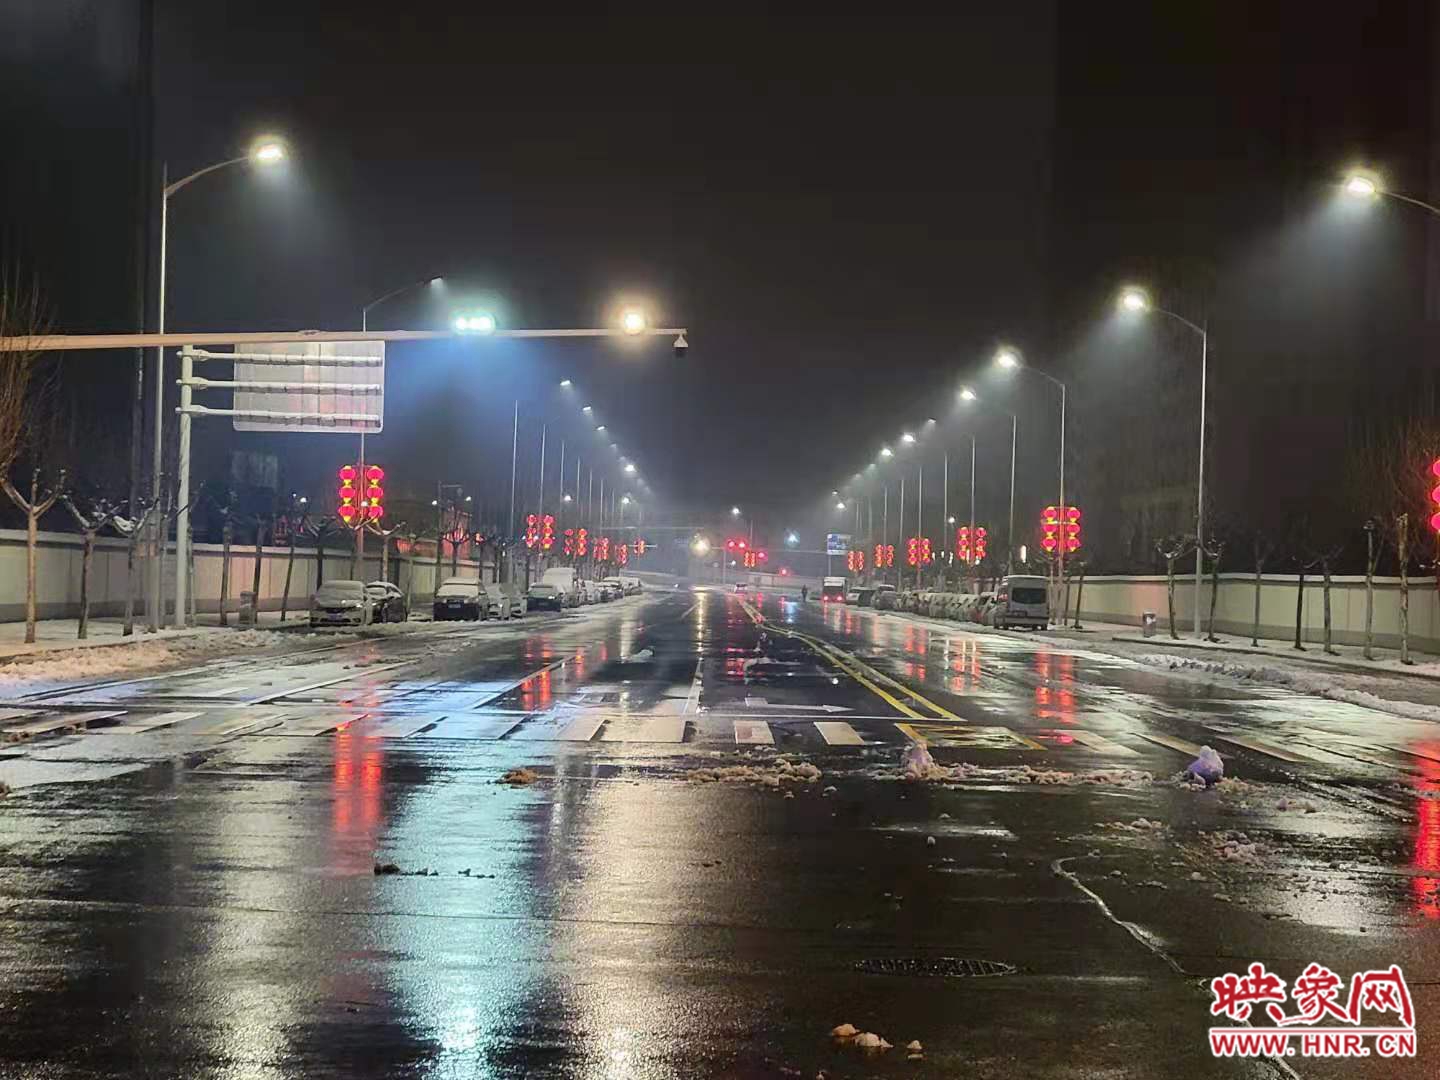 “不眠不休”让道路雪后无雪  近两万郑州人彻夜工作保持市区道路畅通